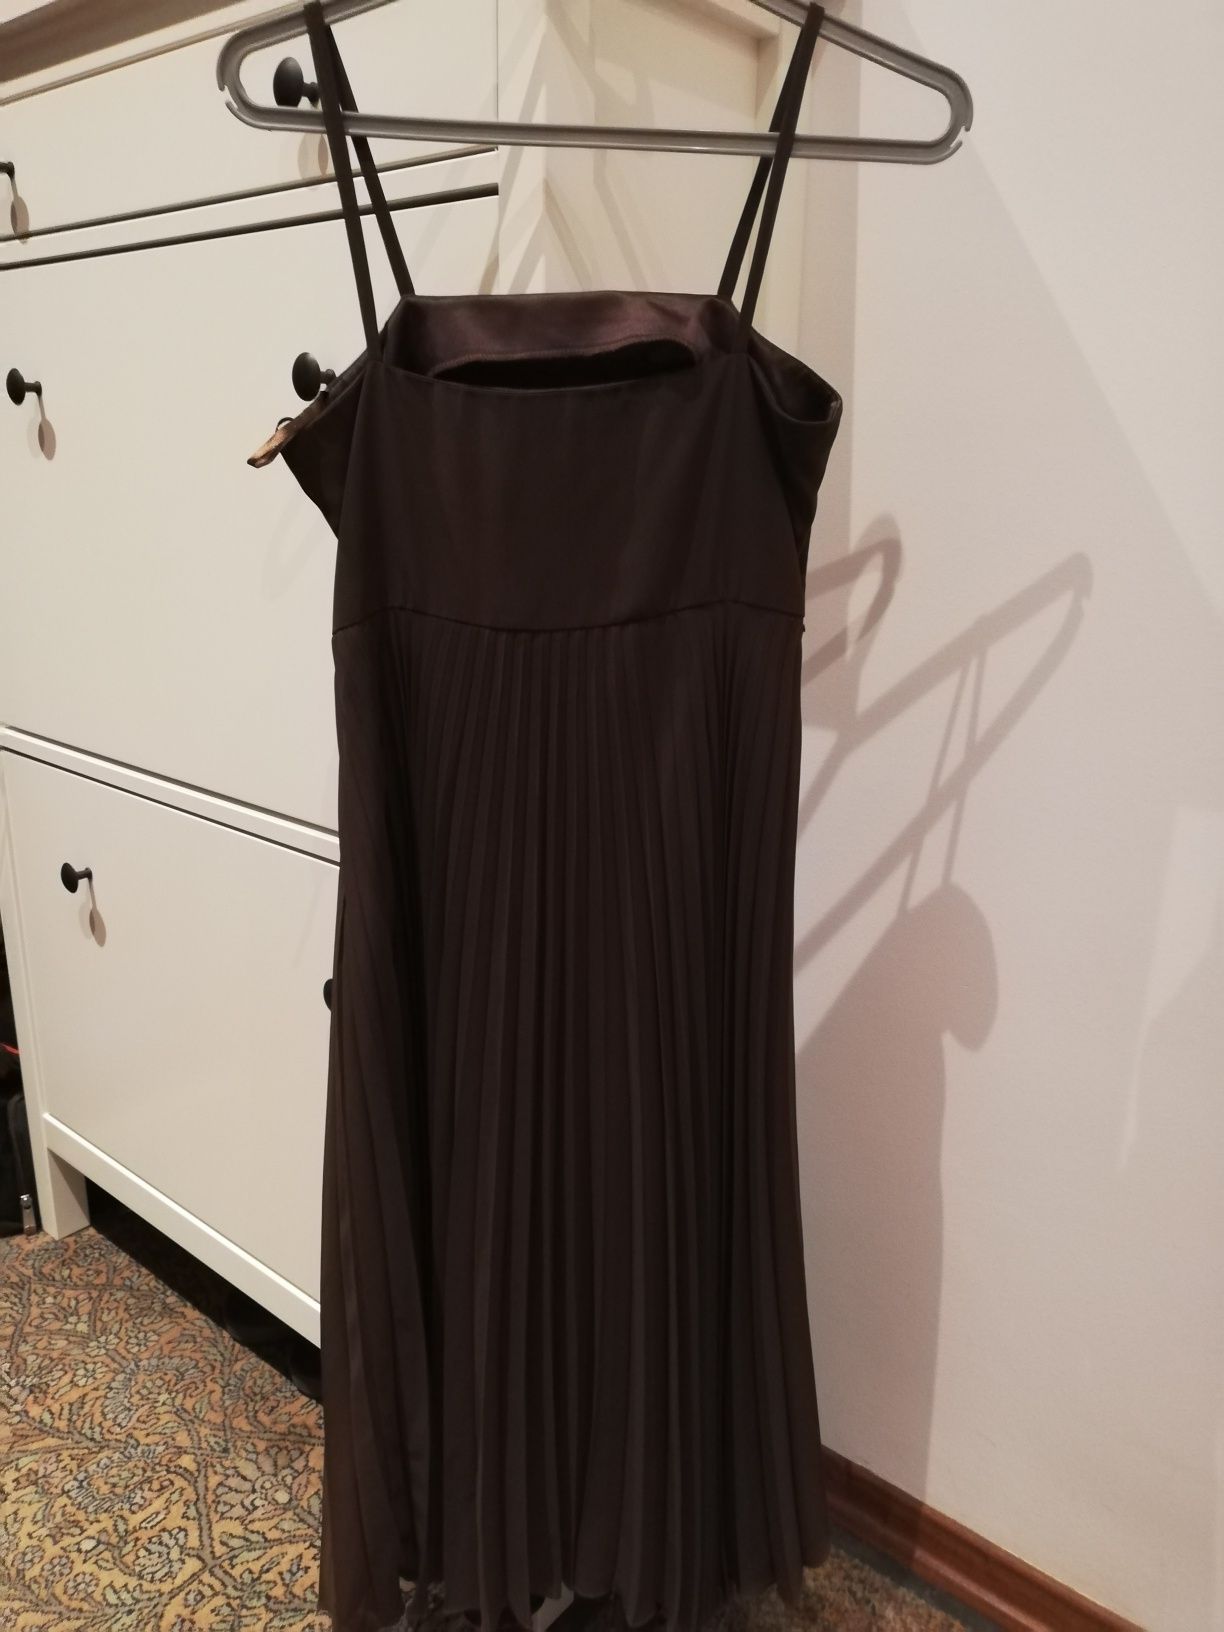 Sukienka rozmiar 36